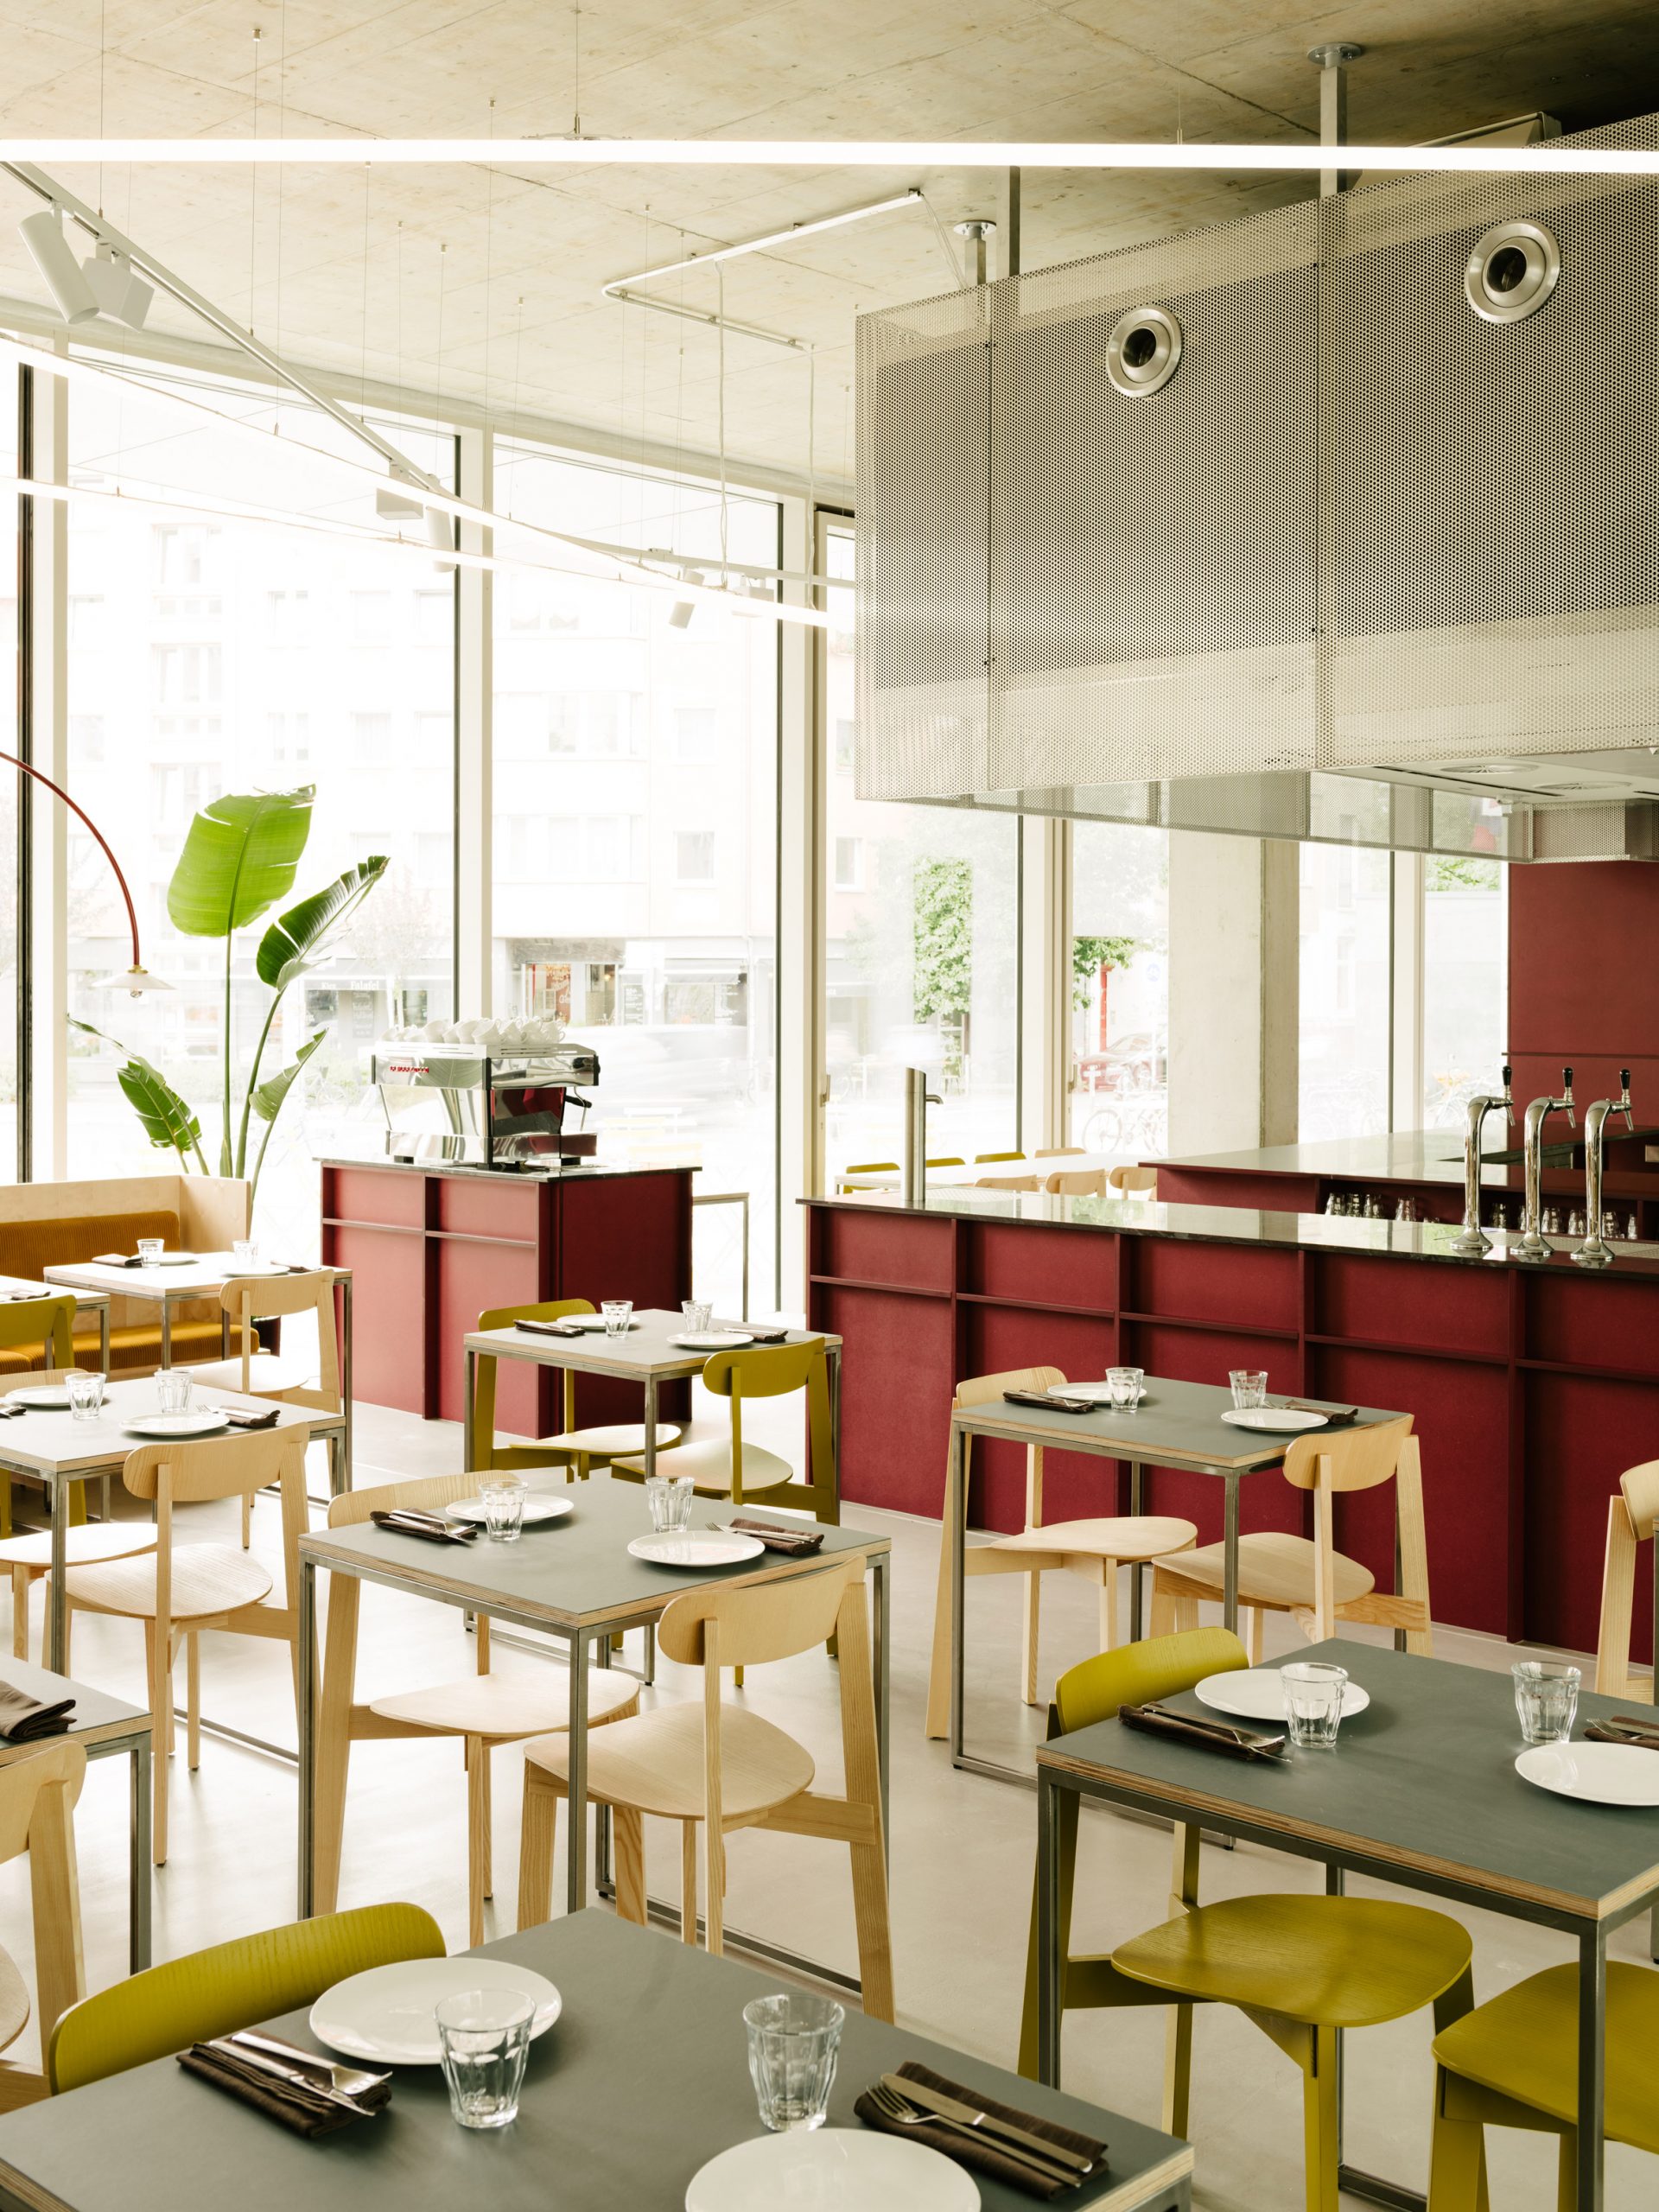 Remi restaurant in Berlin designed by Ester Bruzkus Architekten